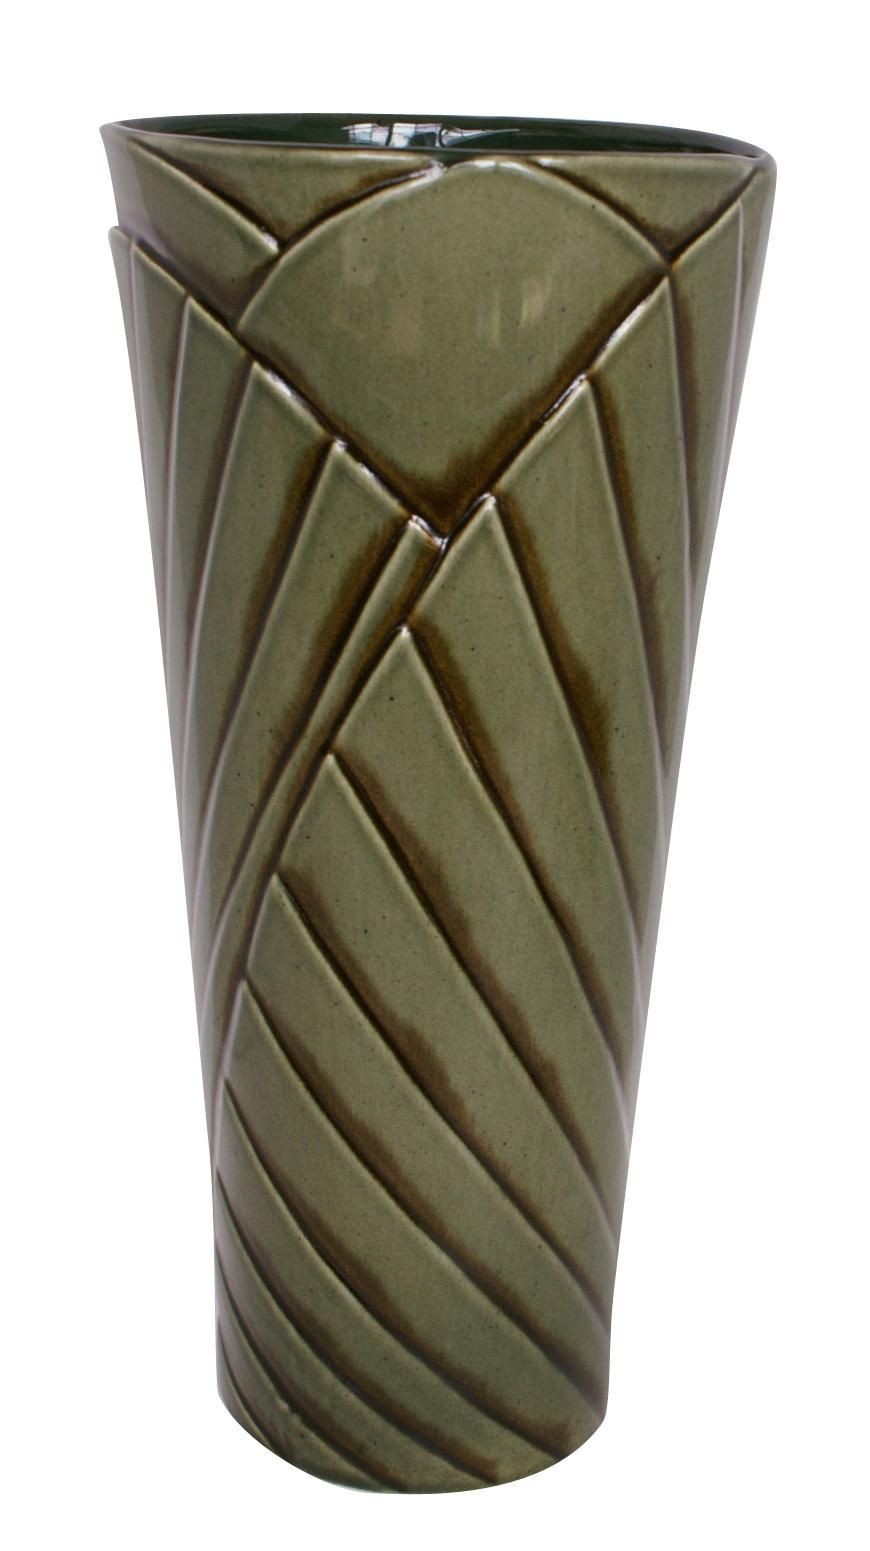 royal haeger vase green of haeger potteries palm grove 20 ceramic vase lampsplus com for haeger potteries palm grove 20 ceramic vase lampsplus com